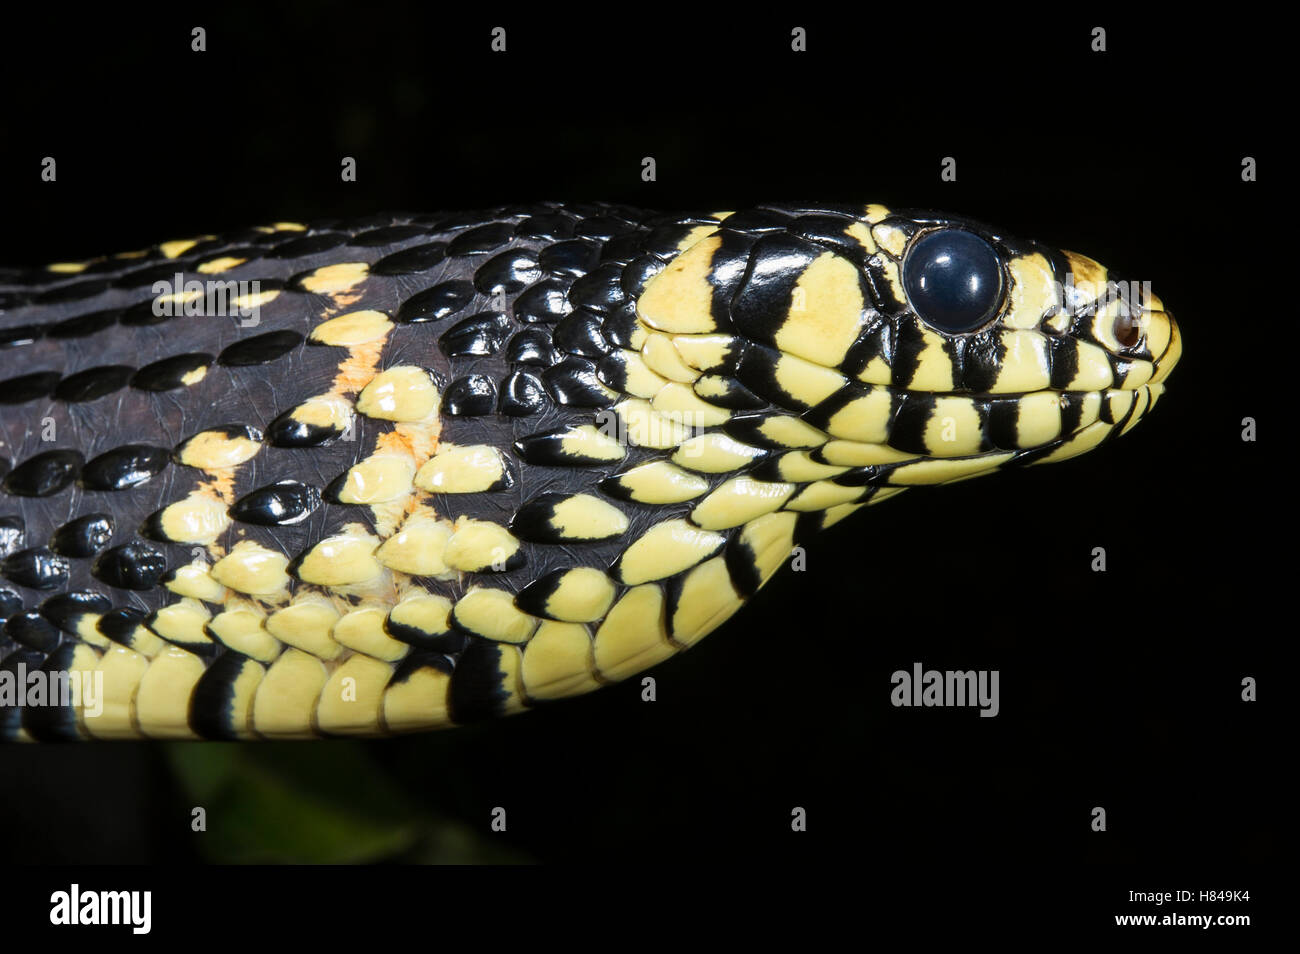 Rata Tropical Spilotes pullatus (Serpiente) en postura defensiva, nativa de América del Sur Foto de stock